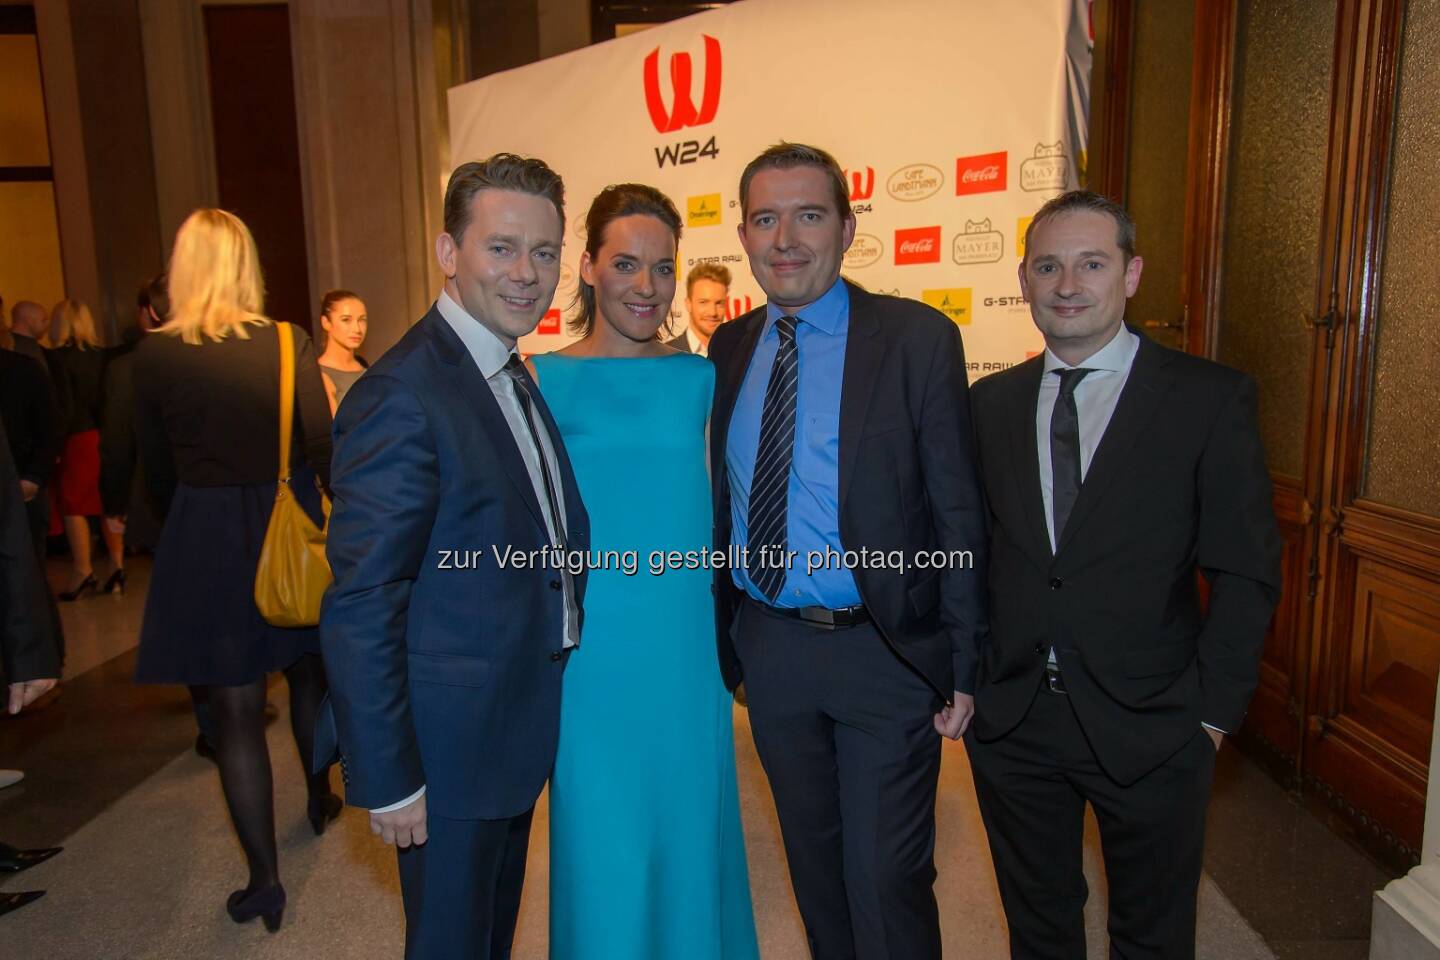 Marcin Kotlowski (WH Medien Geschäftsführer), Eva Pölzl, Markus Pöllhuber (WH Medien Geschäftsführer), Michael Kofler (W24 Geschäftsführer und Programmdirektor)